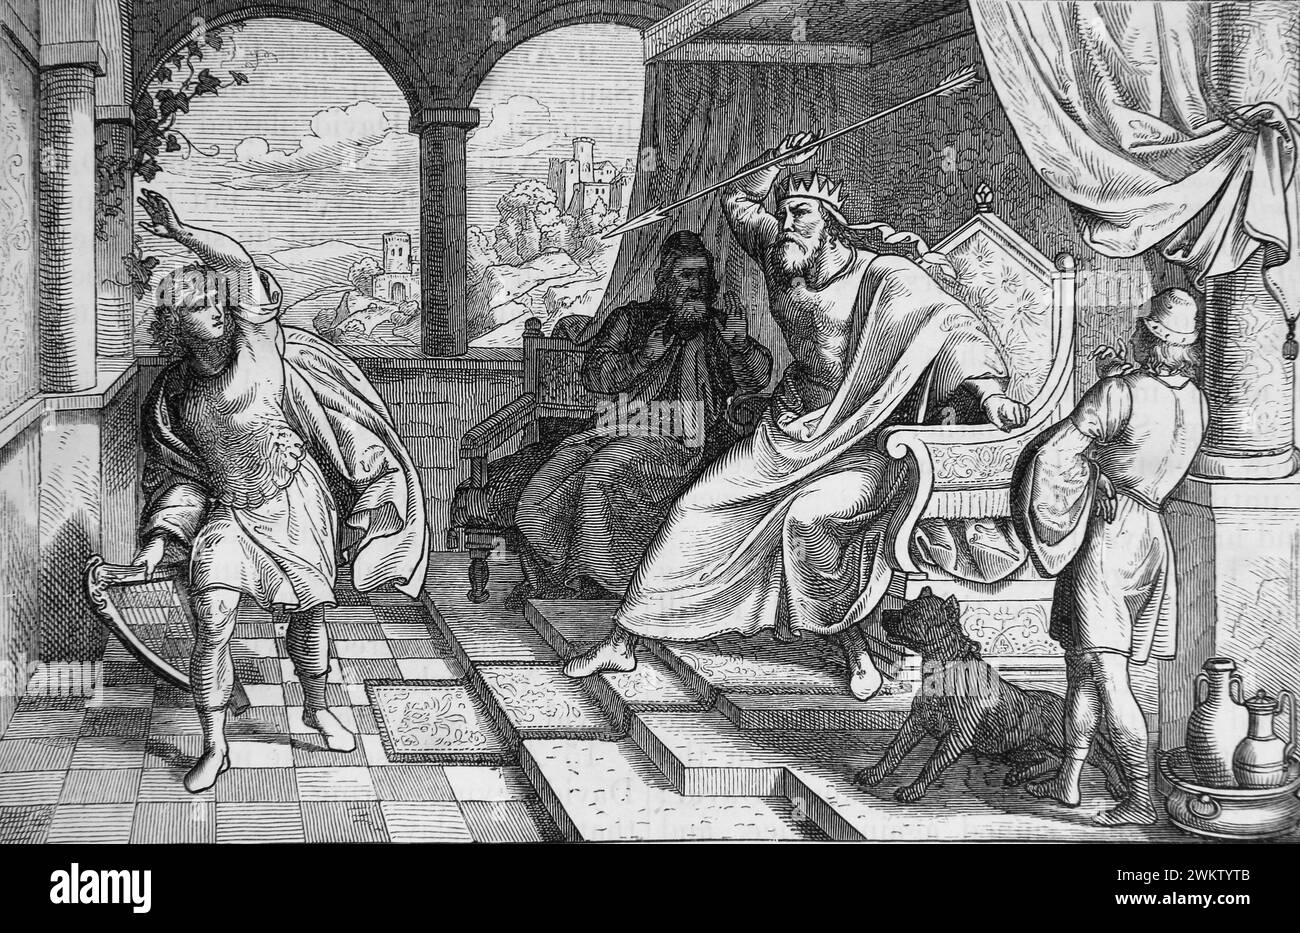 Illustration von König Saul, der David mit seinem Speer bewarfen wollte, um ihn zu töten, aber er verpasste "ich werde David sogar an die Mauer schlagen" aus dem antiken 19. Jahrhundert Stockfoto